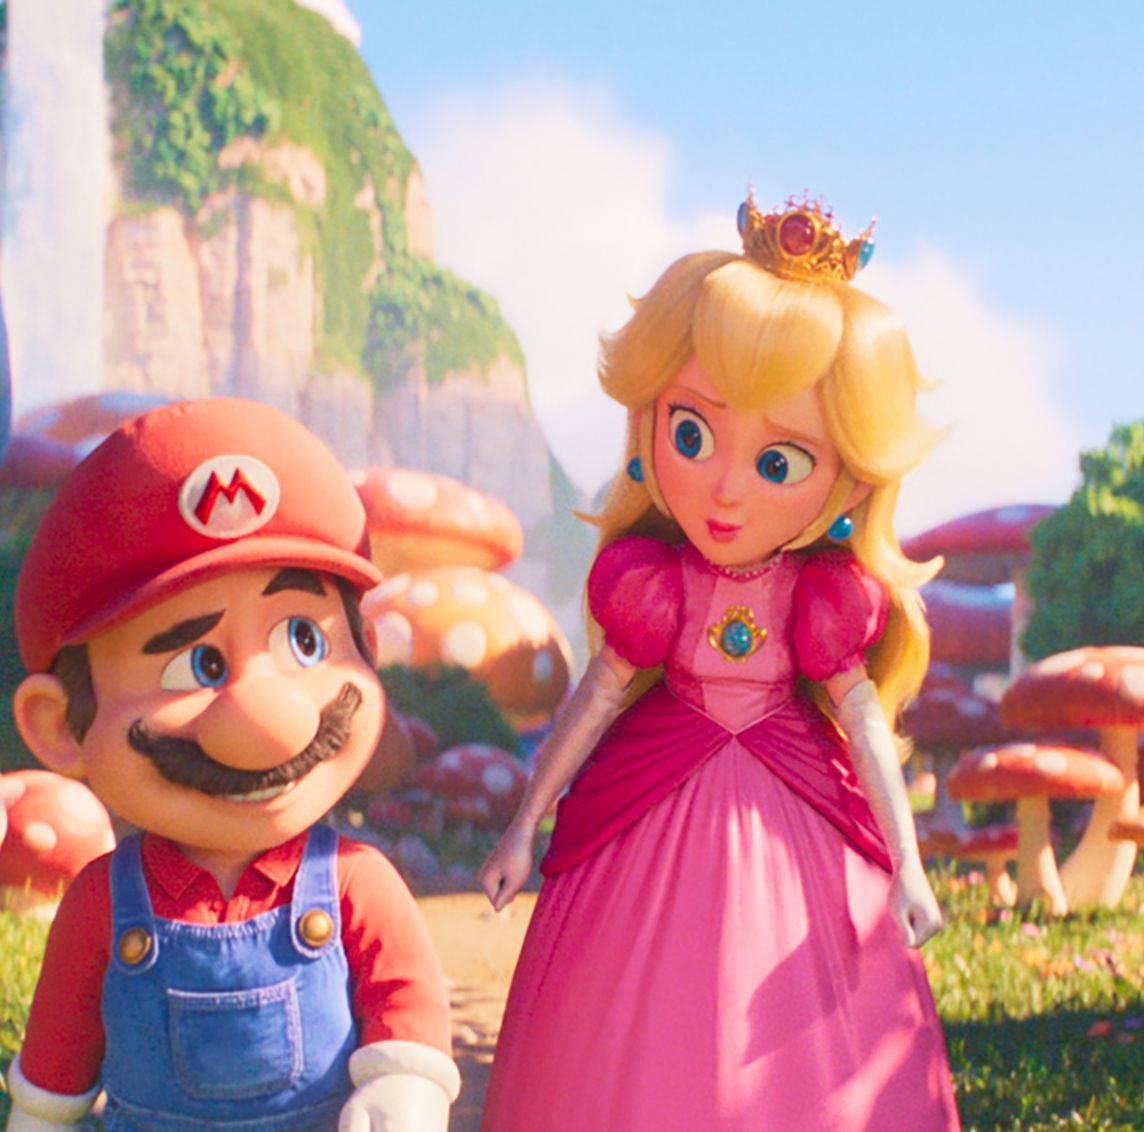 Nintendo mostra pôster e visual do filme do Mario